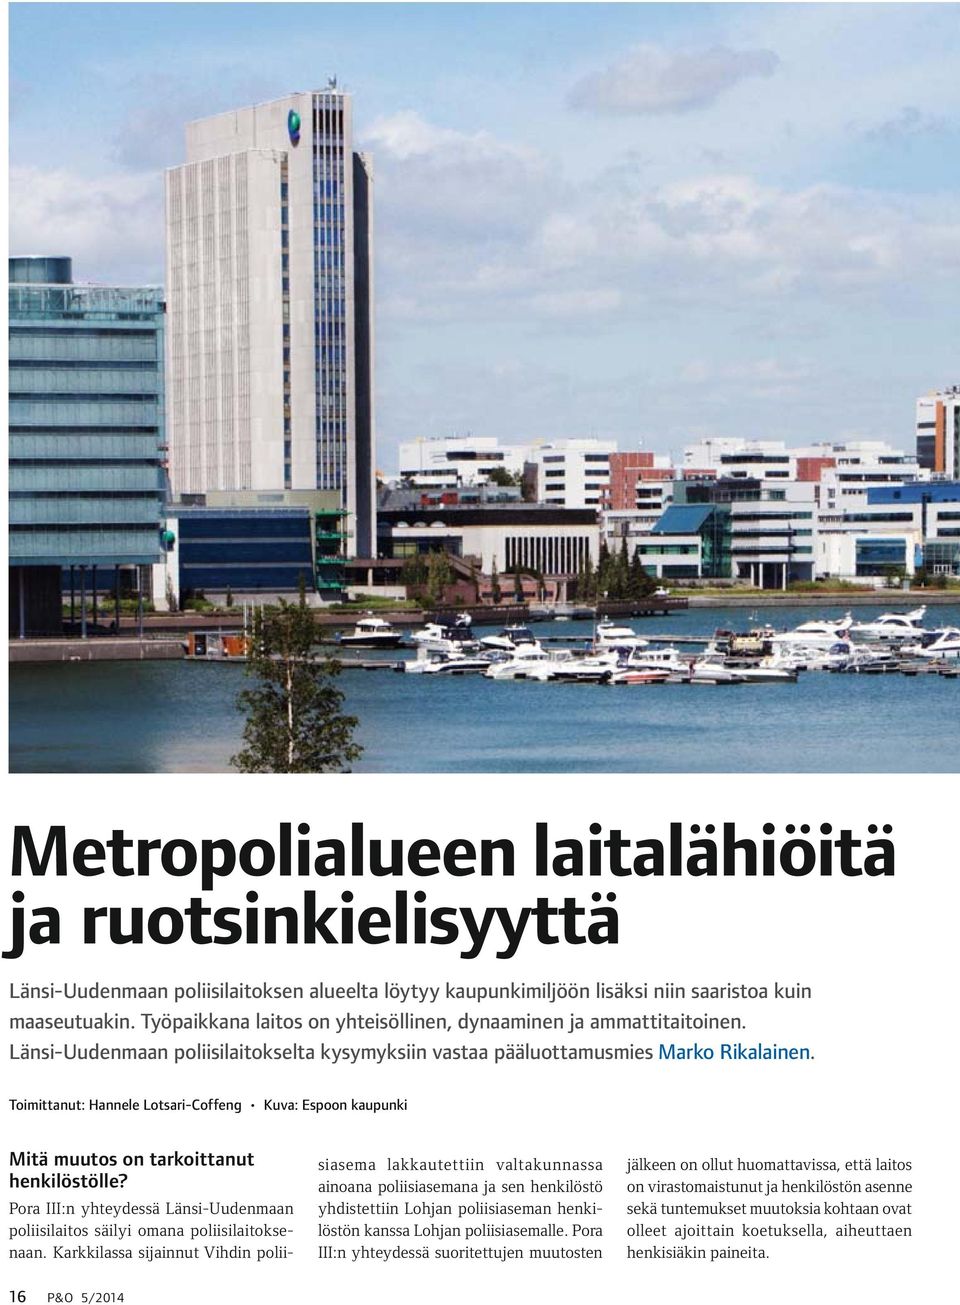 Toimittanut: Hannele Lotsari-Coffeng Kuva: Espoon kaupunki Mitä muutos on tarkoittanut henkilöstölle? Pora III:n yhteydessä Länsi-Uudenmaan poliisilaitos säilyi omana poliisilaitoksenaan.